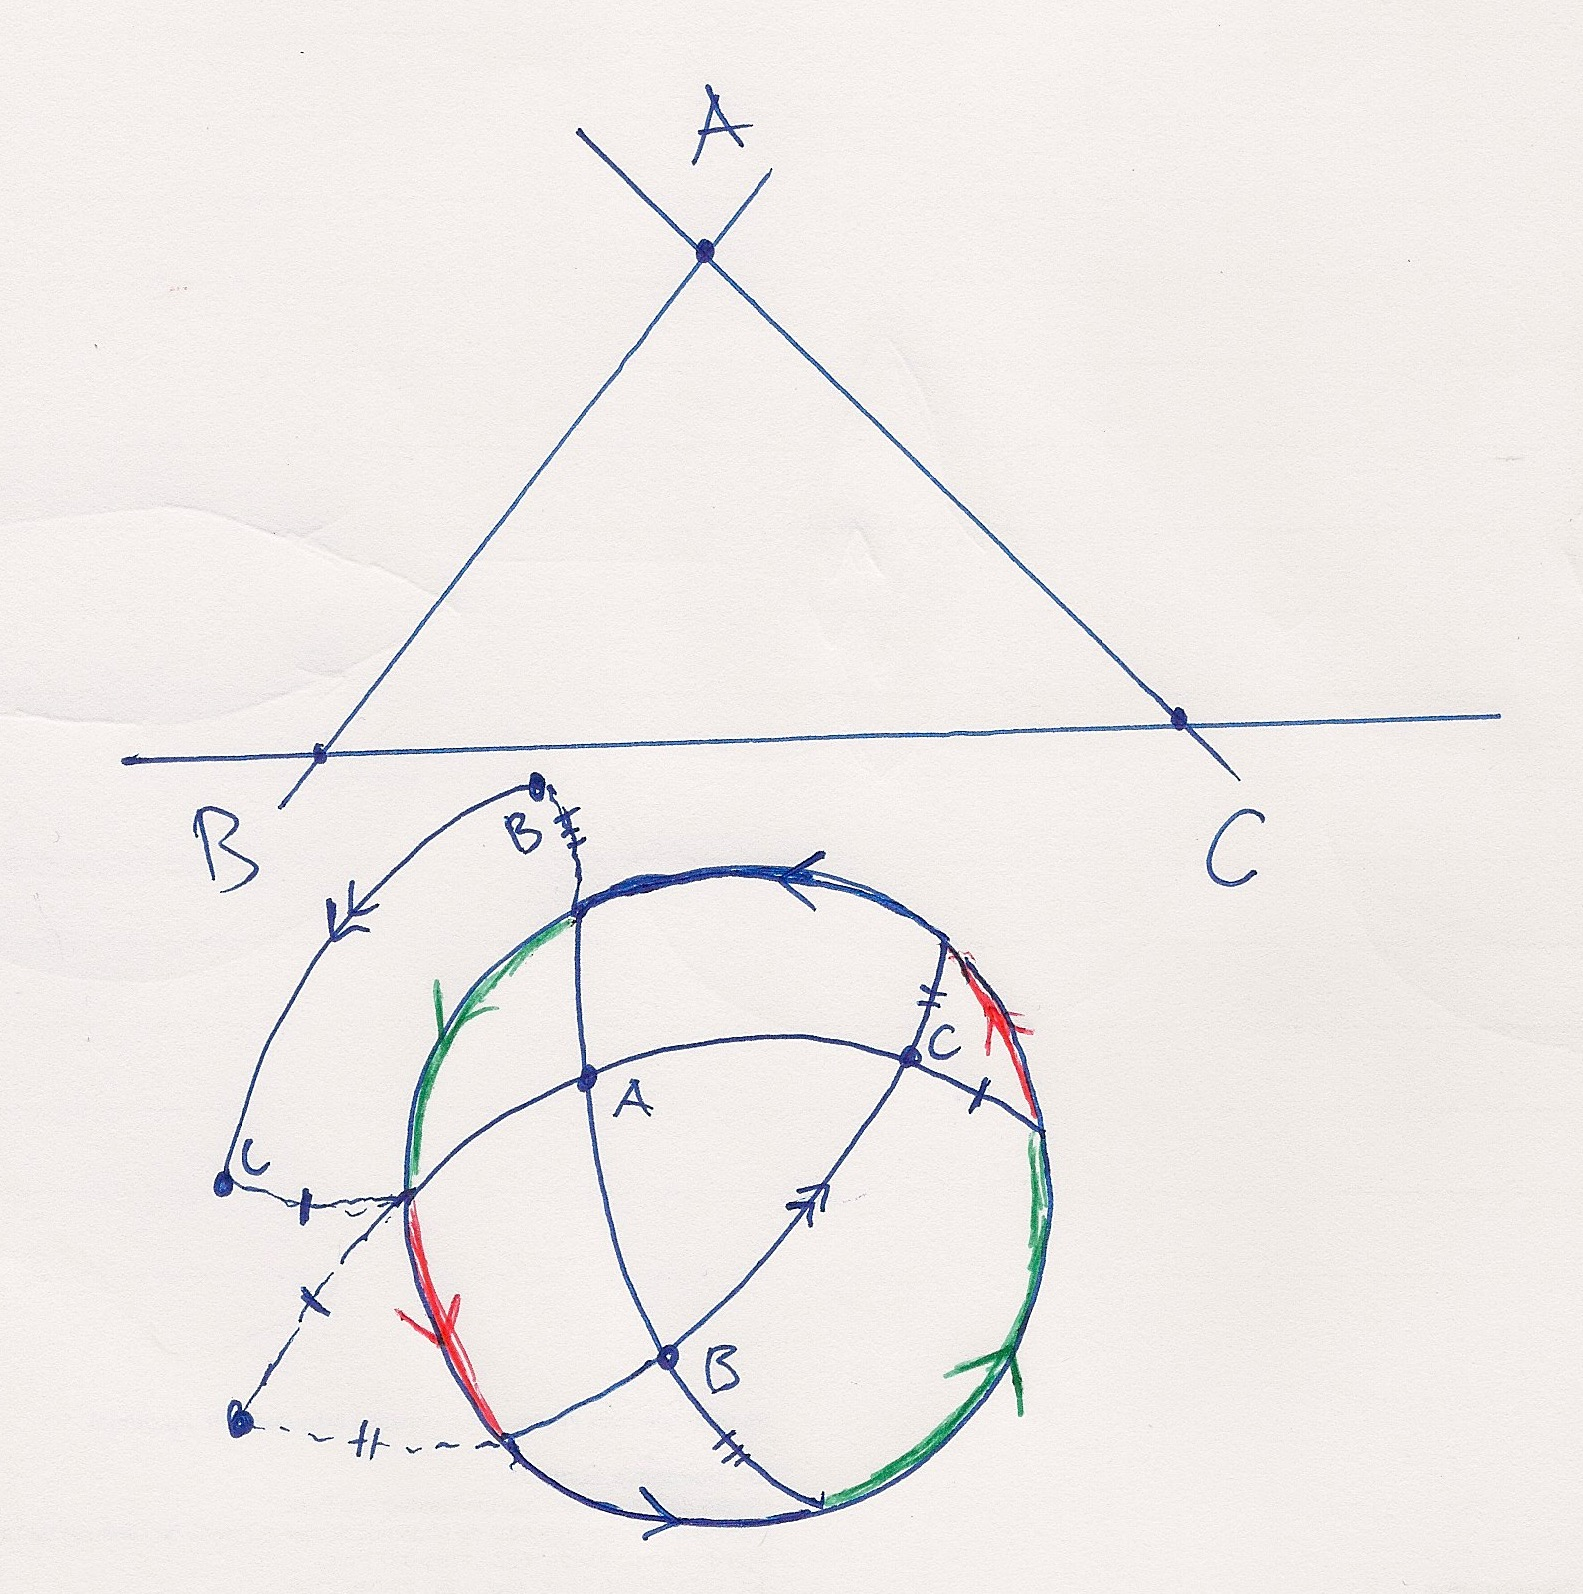 GEOMETRIA PROJETIVA 11 Figura 12. Triângulo no plano projetivo Figura 13. Triângulos em perspetiva central e axial Teorema 6.7 (Desargues no espaço).